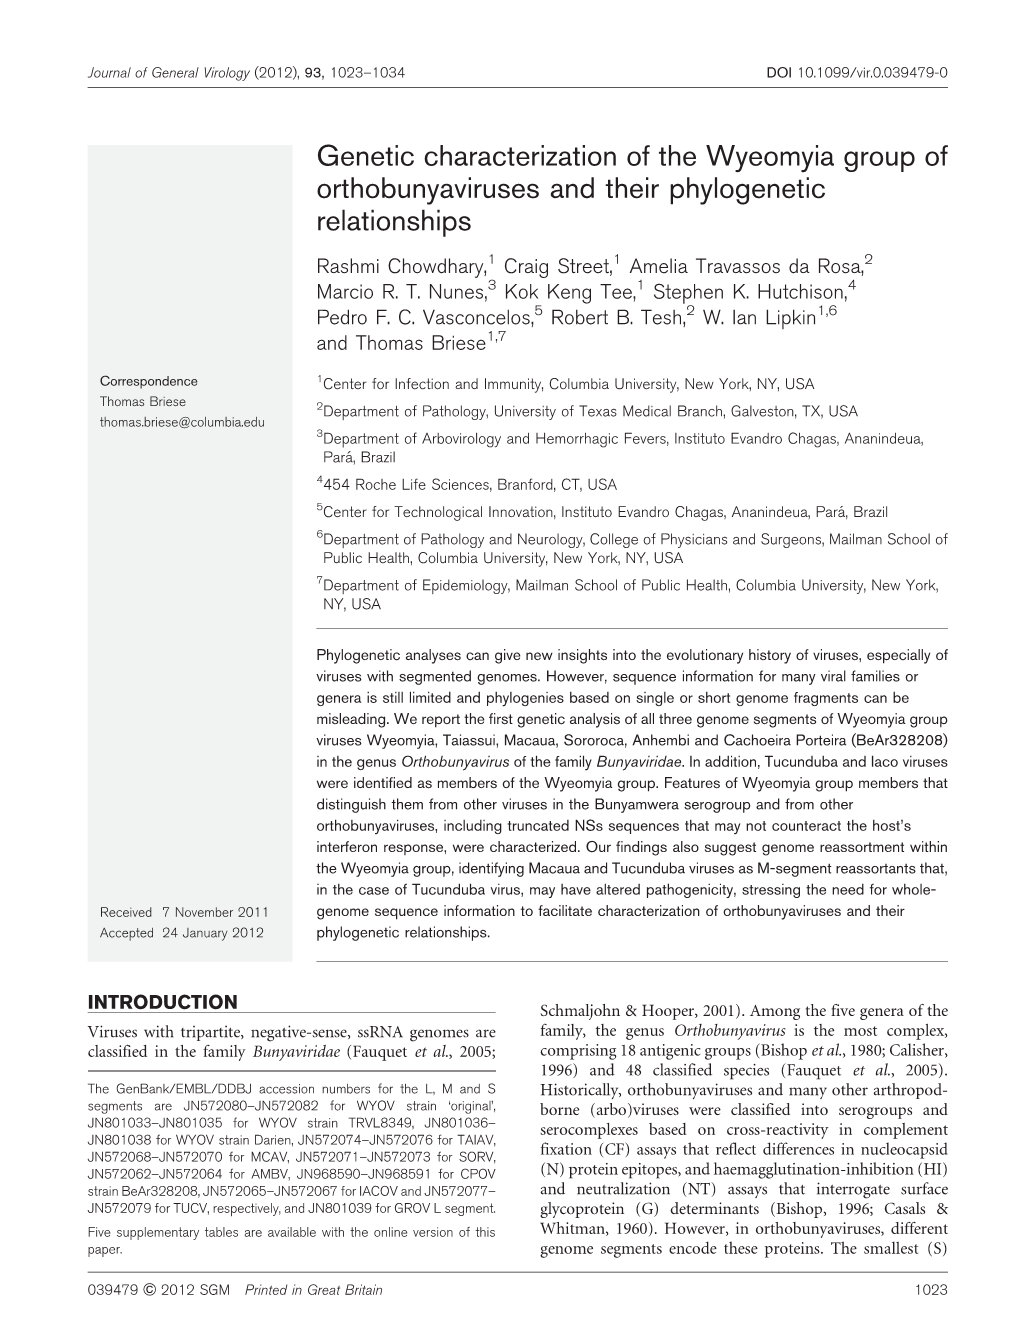 Genetic Characterization of the Wyeomyia Group of Orthobunyaviruses and Their Phylogenetic Relationships